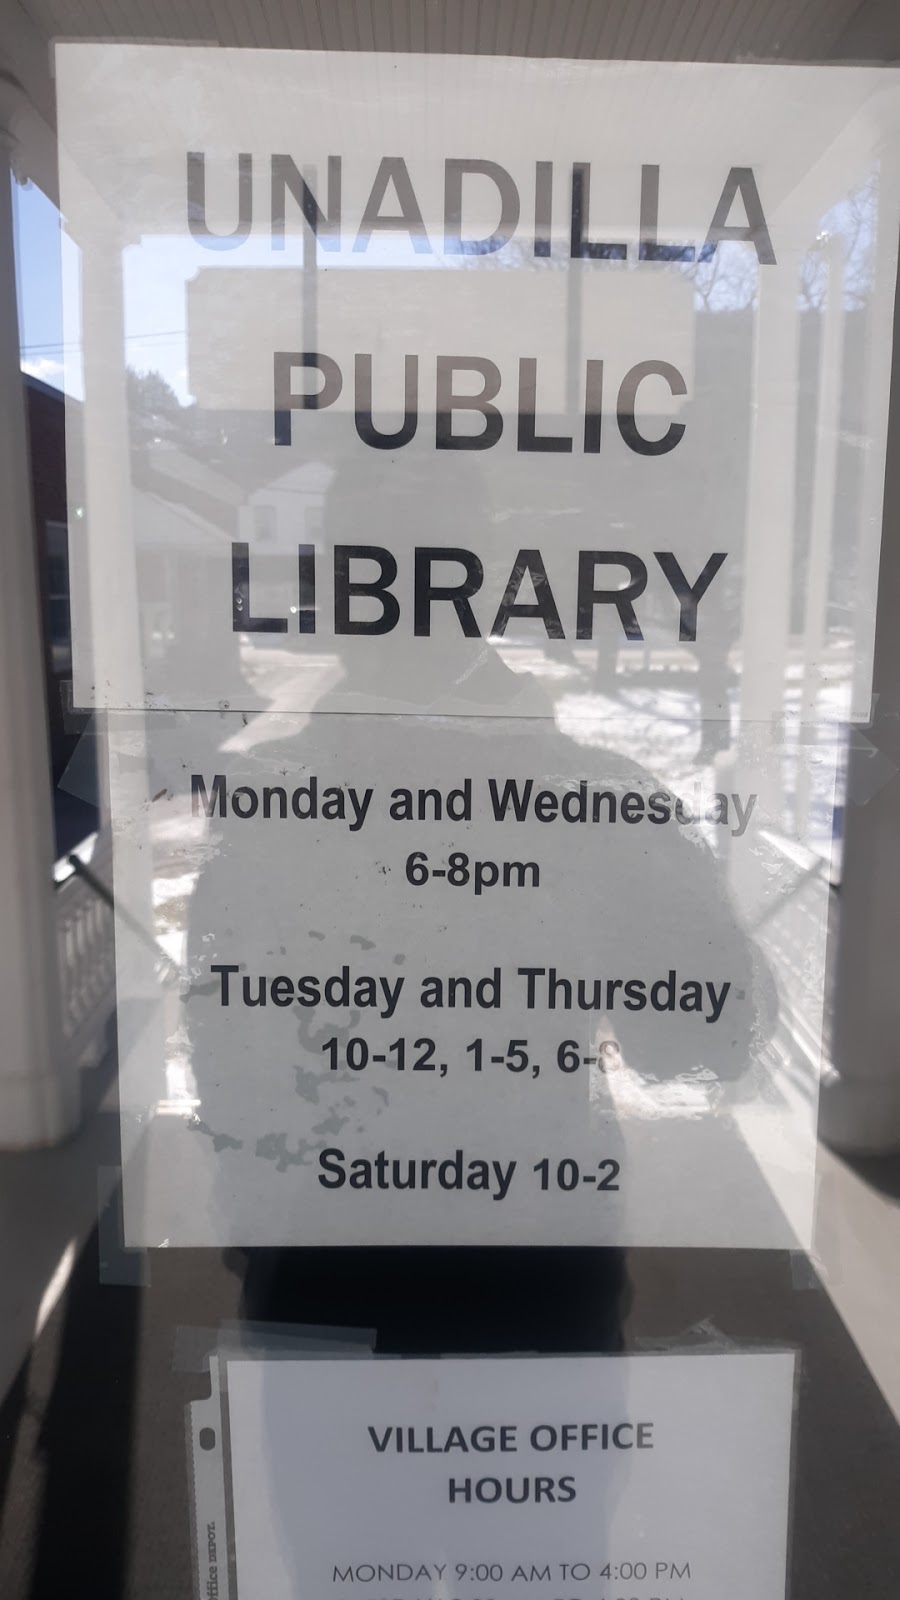 Unadilla Public Library | 193 Main St, Unadilla, NY 13849 | Phone: (607) 369-3131